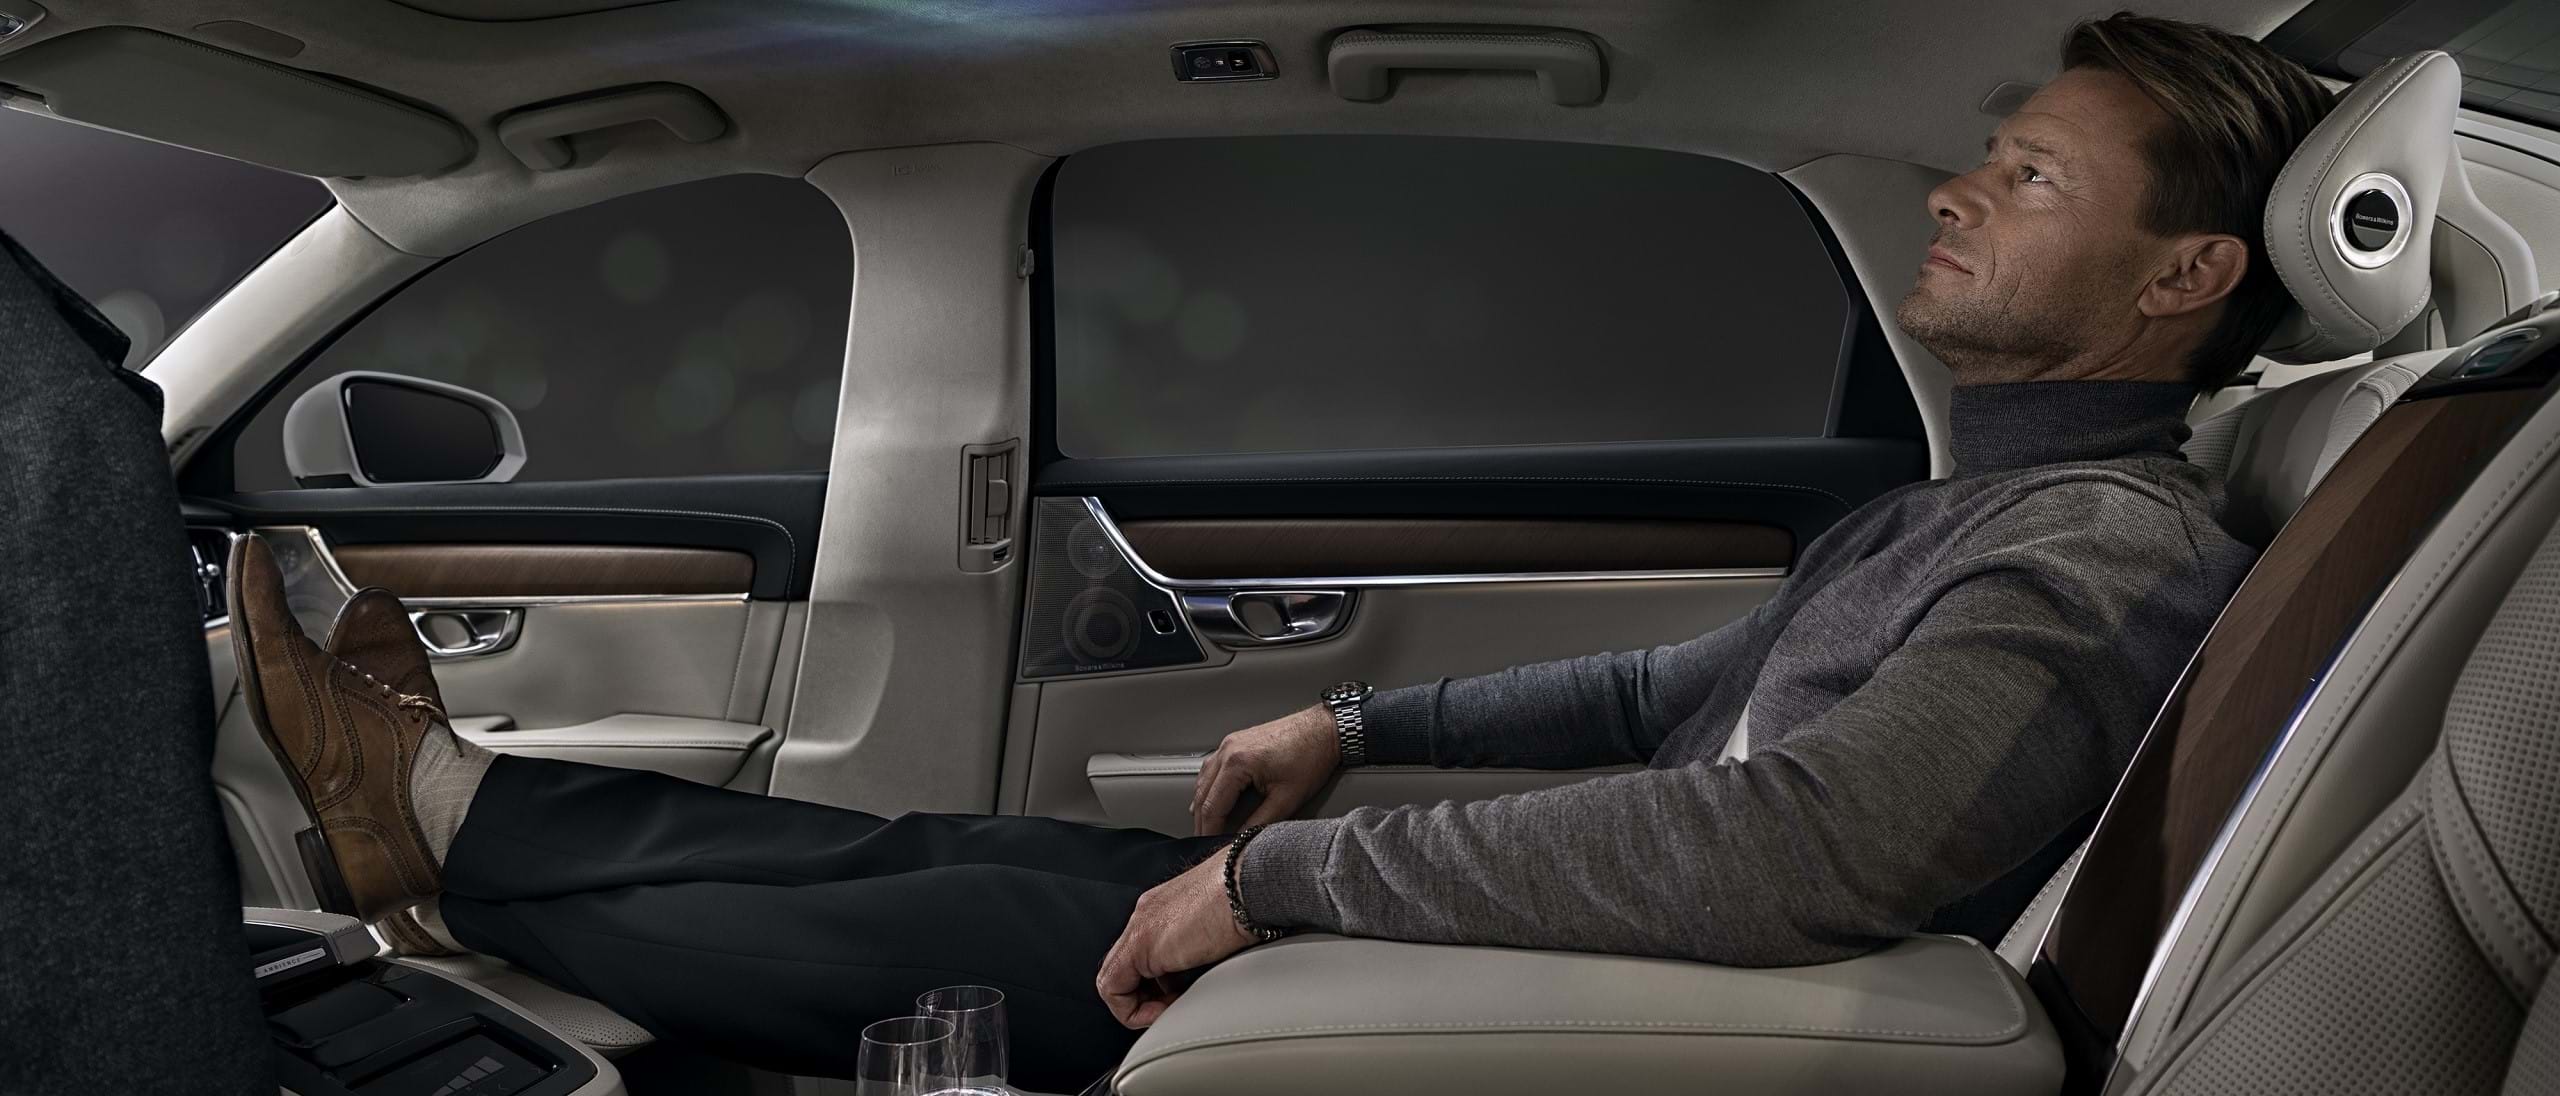 Një burrë i mbështetur në ndenjësen e pasme të një makine Volvo duke shijuar veçorinë Ambience Interior.